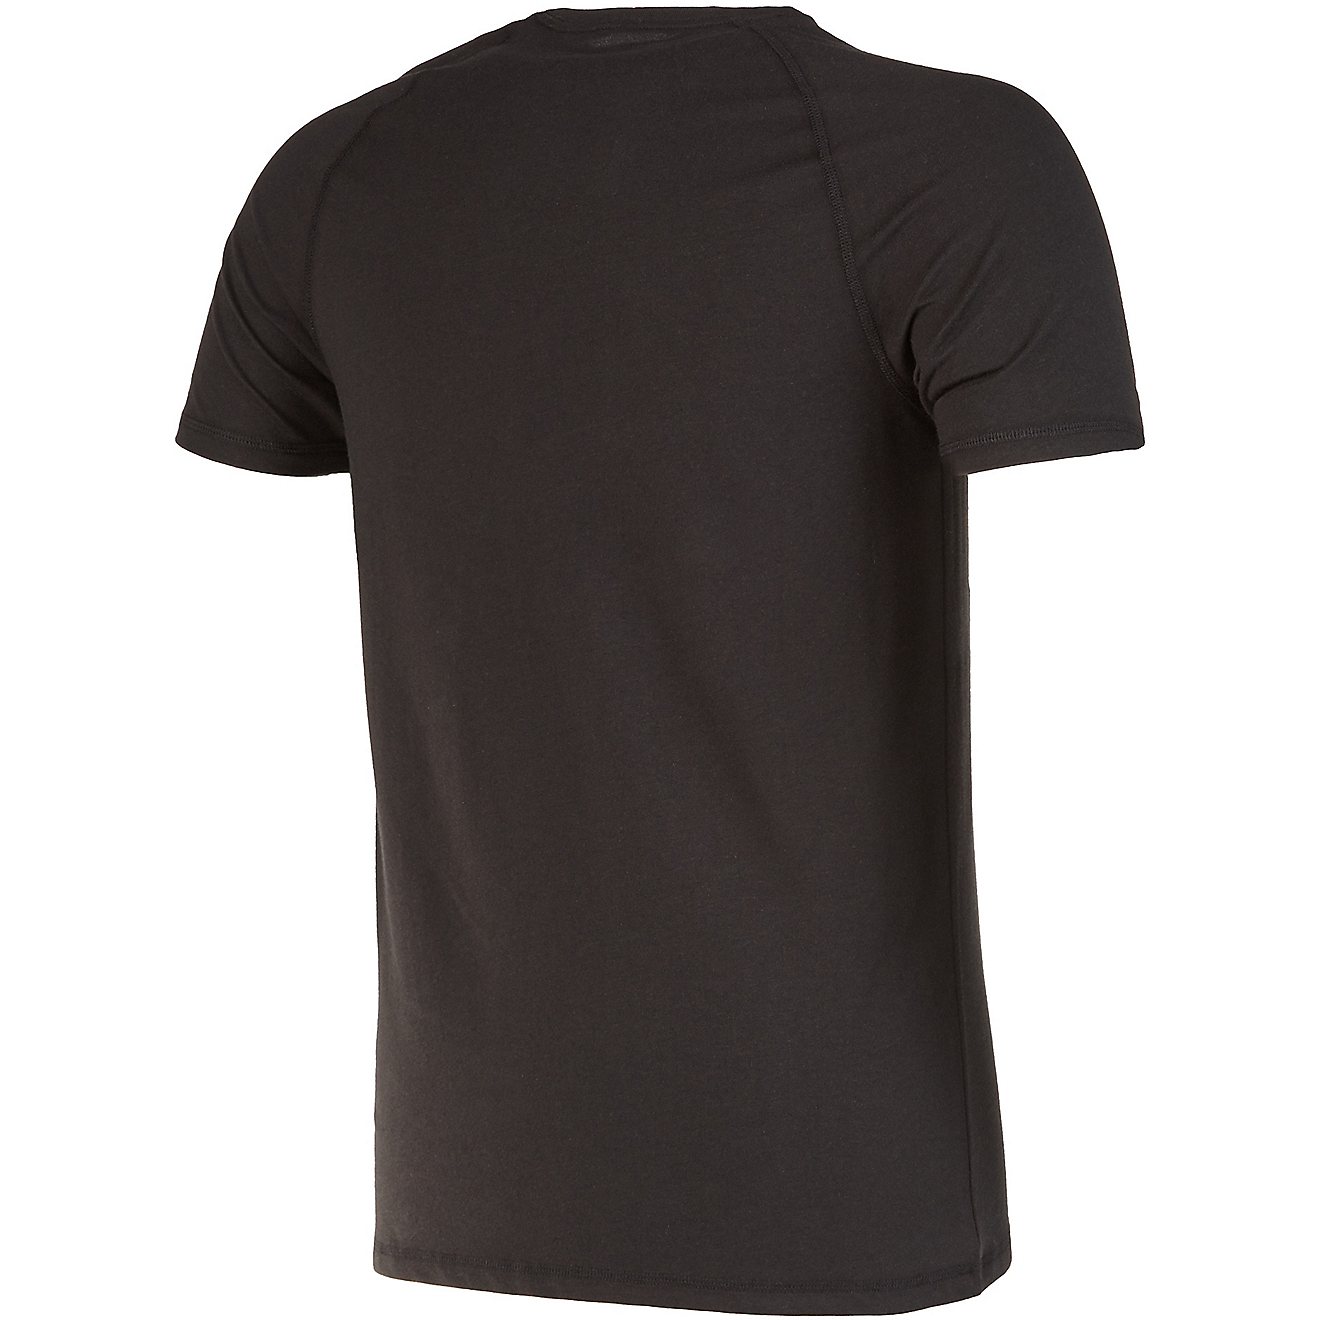 Carhartt Men's Force Cotton Short Sleeve T-shirt                                                                                 - view number 2